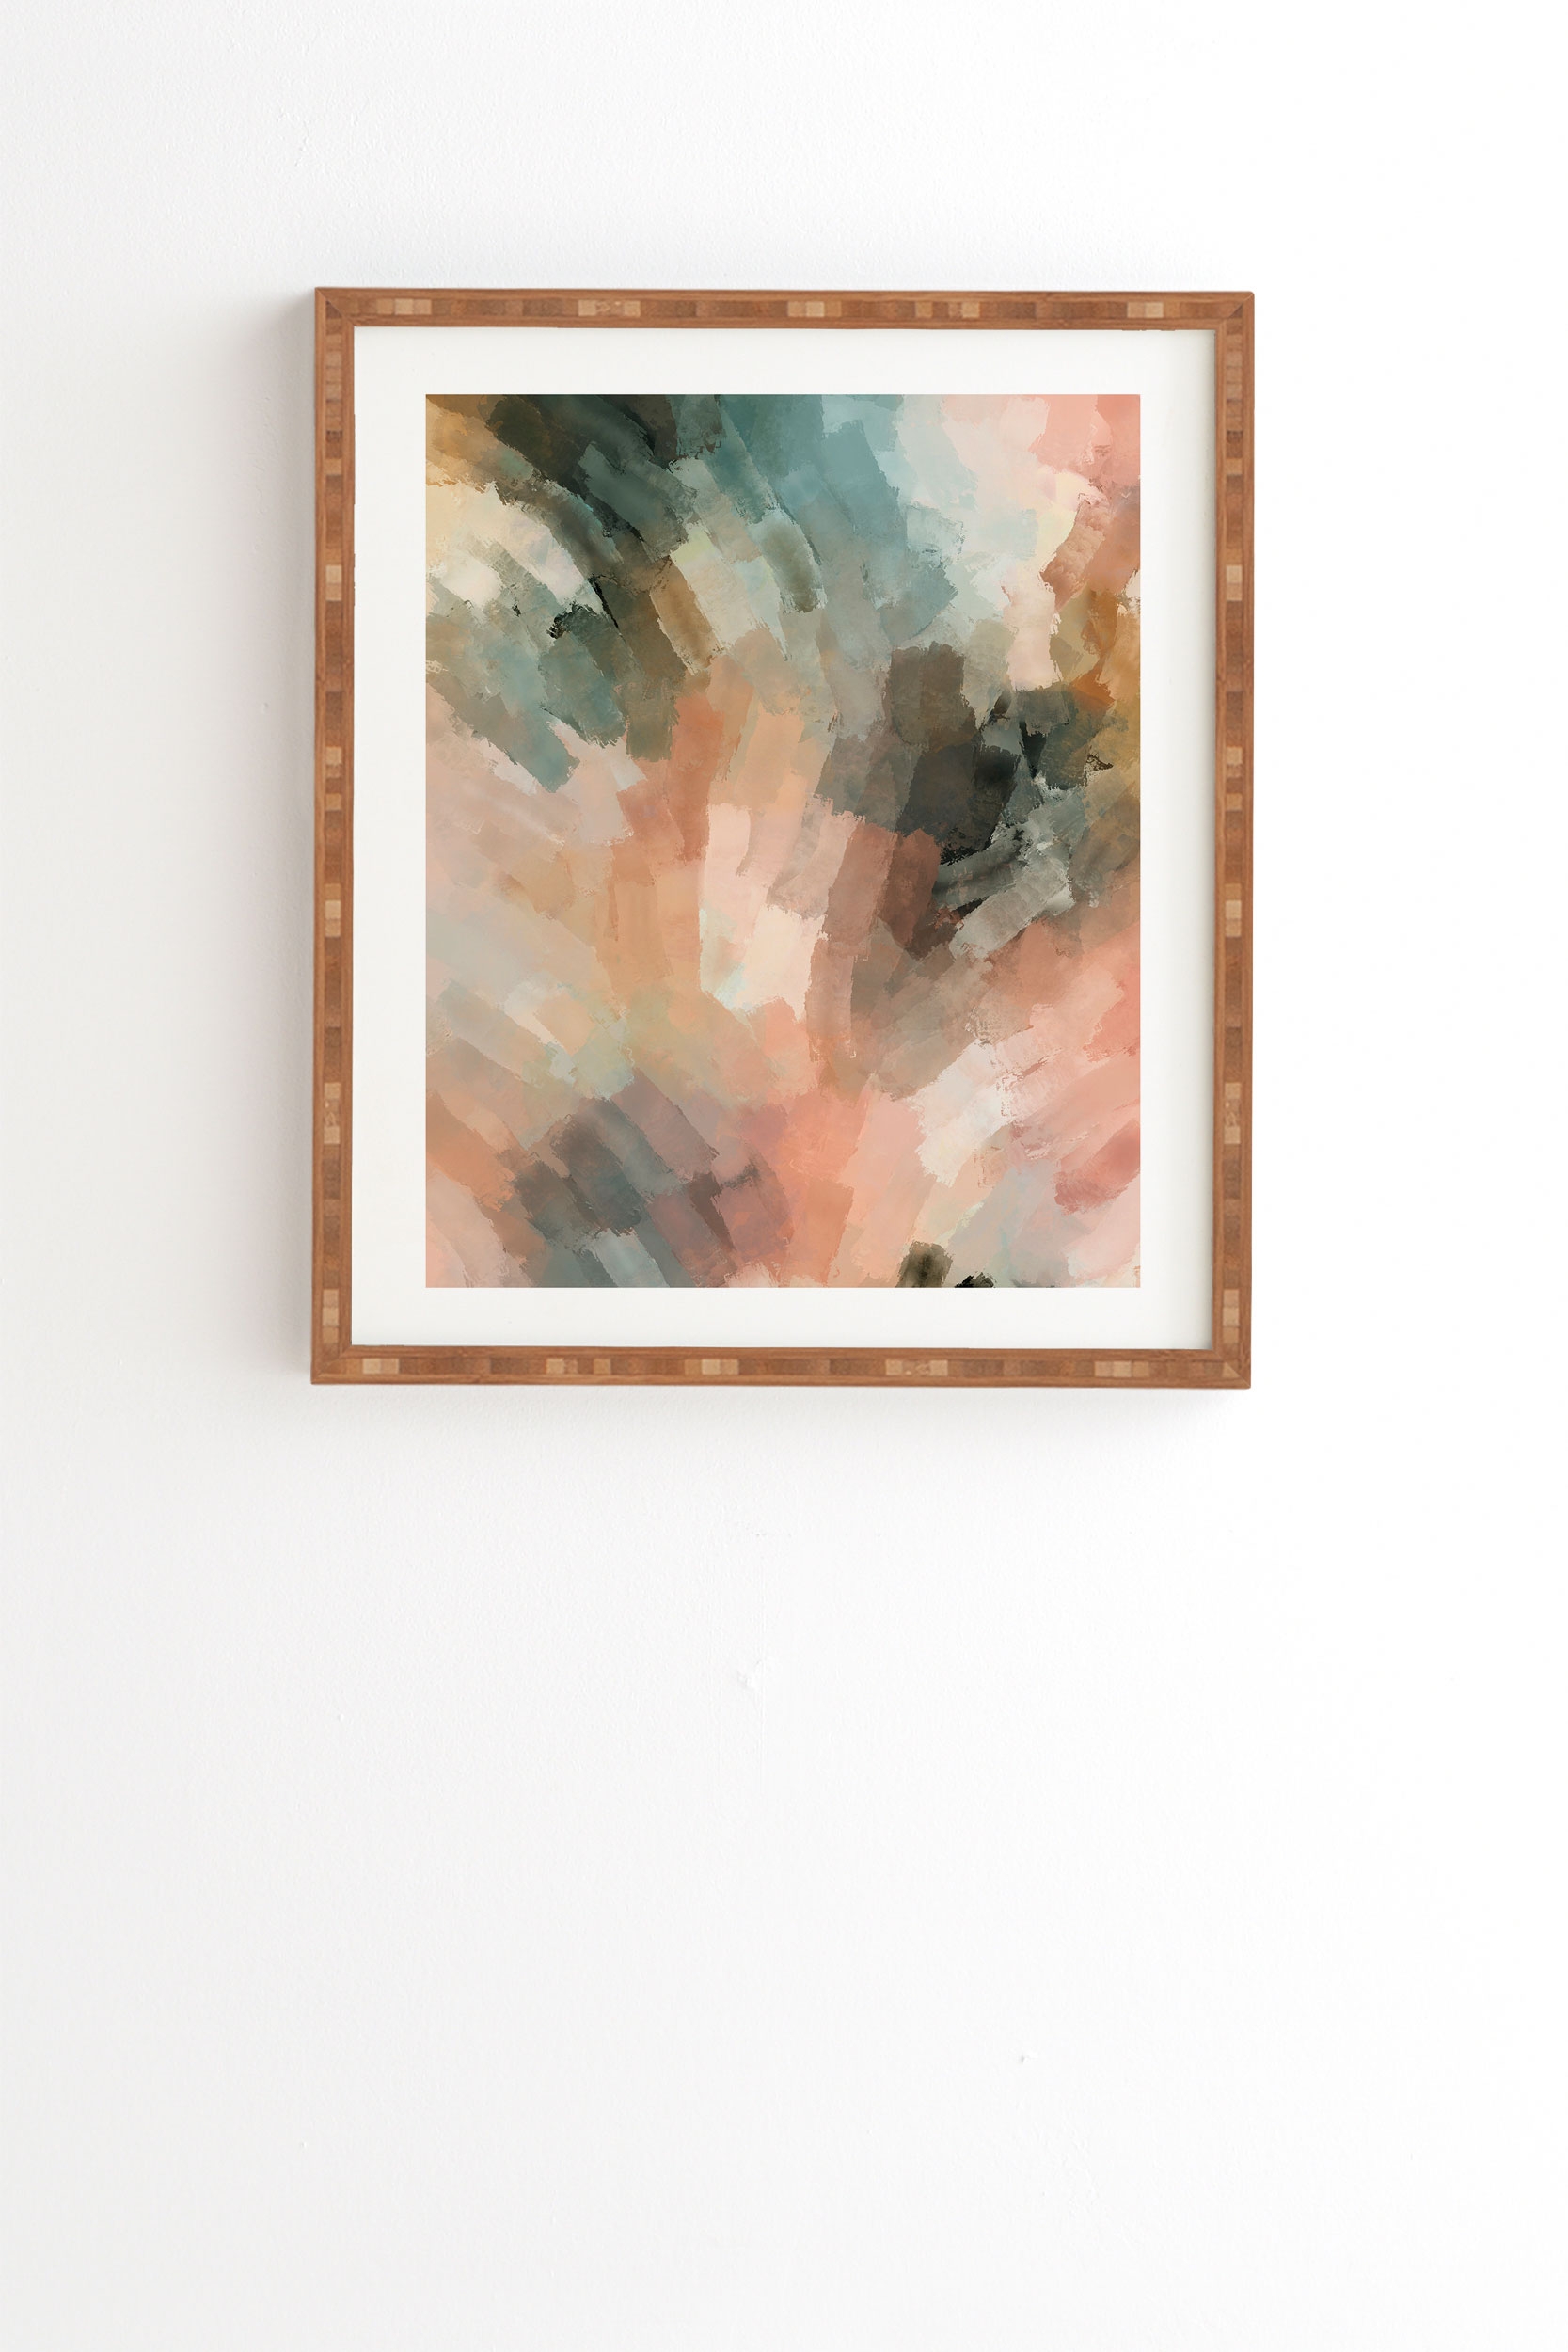 Waves Strokes Iii by Marta Barragan Camarasa - Framed Wall Art Bamboo 14" x 16.5" - Image 0